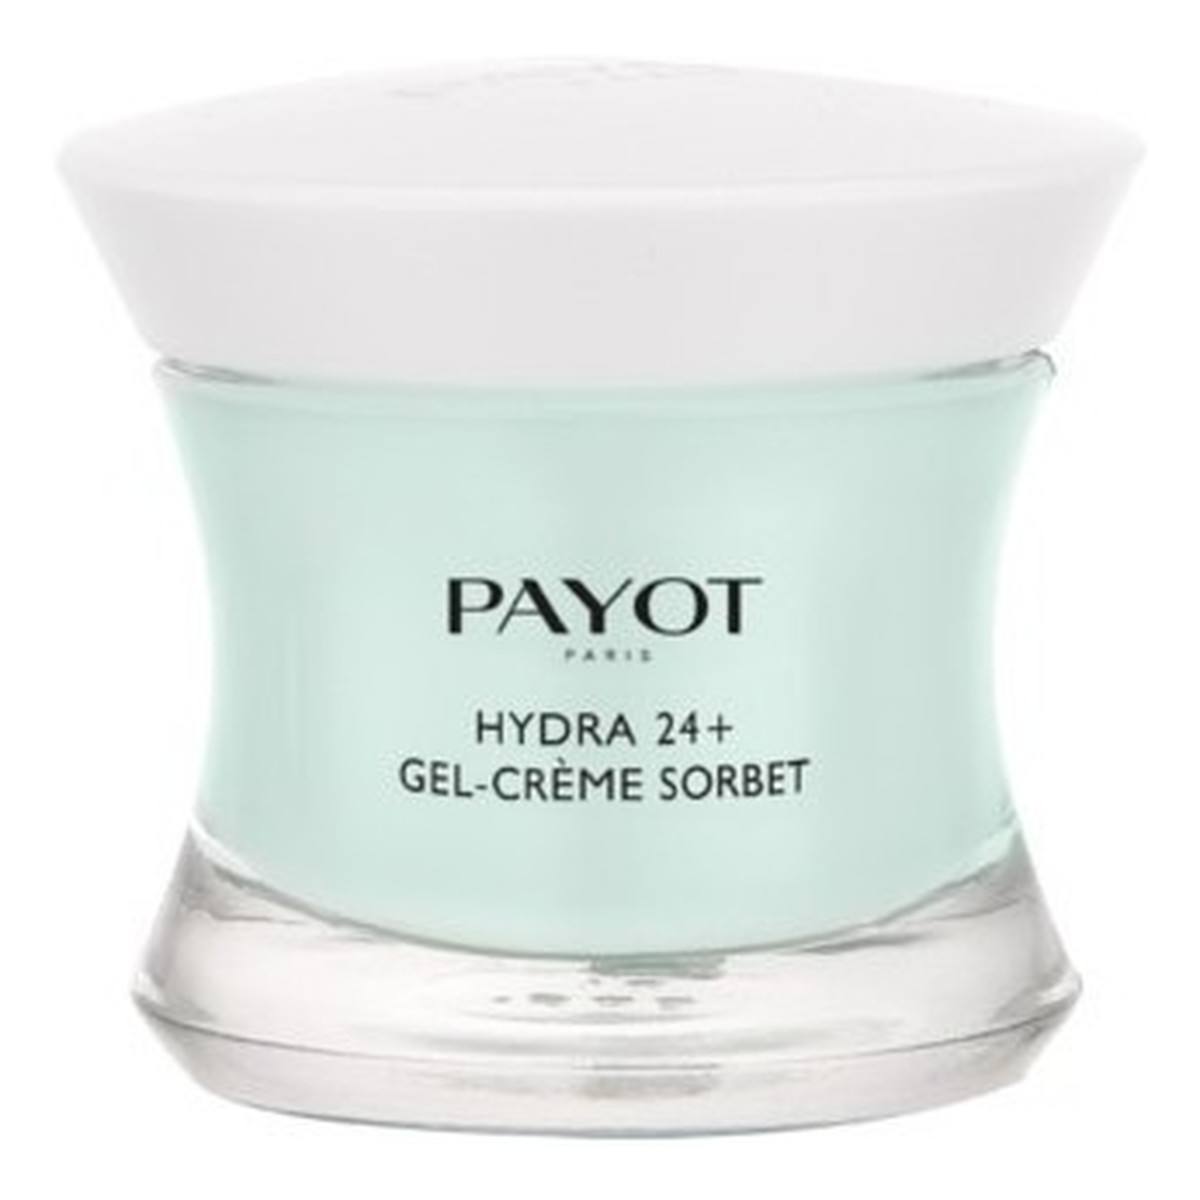 Payot Hydra24 + Gel - Creme Sorbet Nawilżający żel - krem do cery mieszanej 50ml